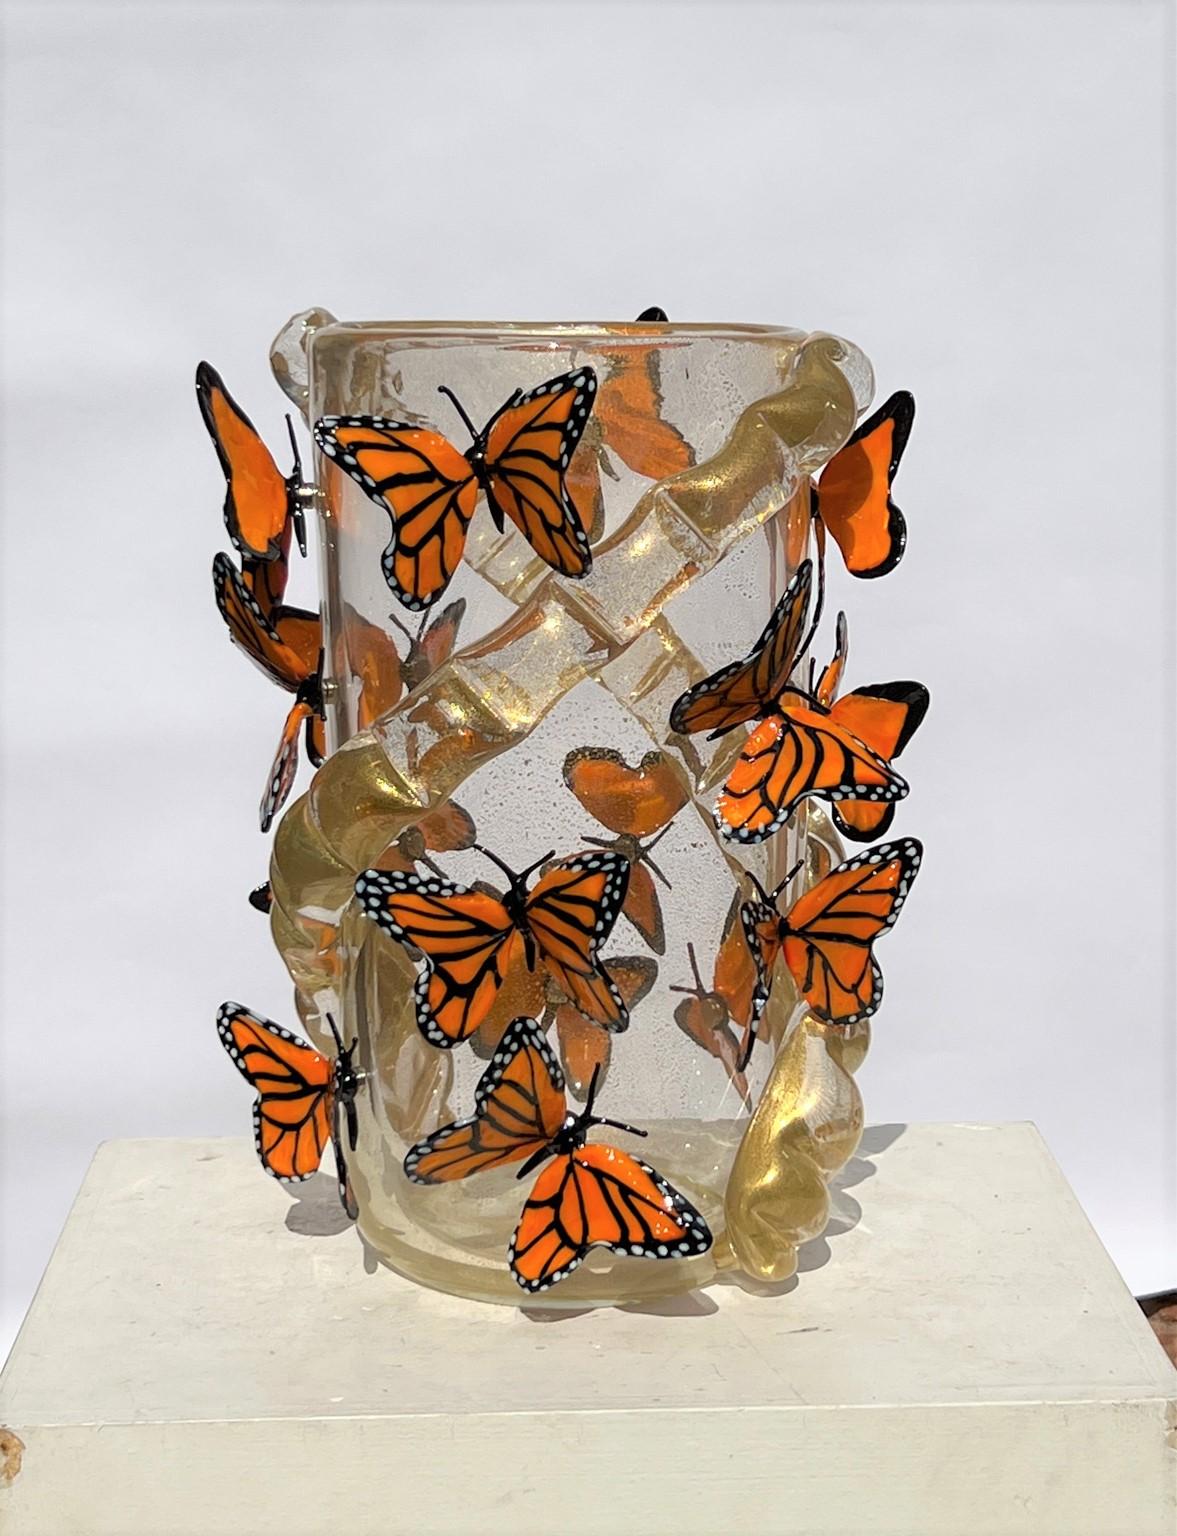 Handgefertigte Vase aus mundgeblasenem Murano-Glas mit echtem 24-karätigem Blattgold und Monarch-Schmetterlingen, die mit einem Magneten befestigt sind. Die Vase enthält 16 Monarch-Schmetterlinge
Moderne Vase ideal für eine moderne und rustikale